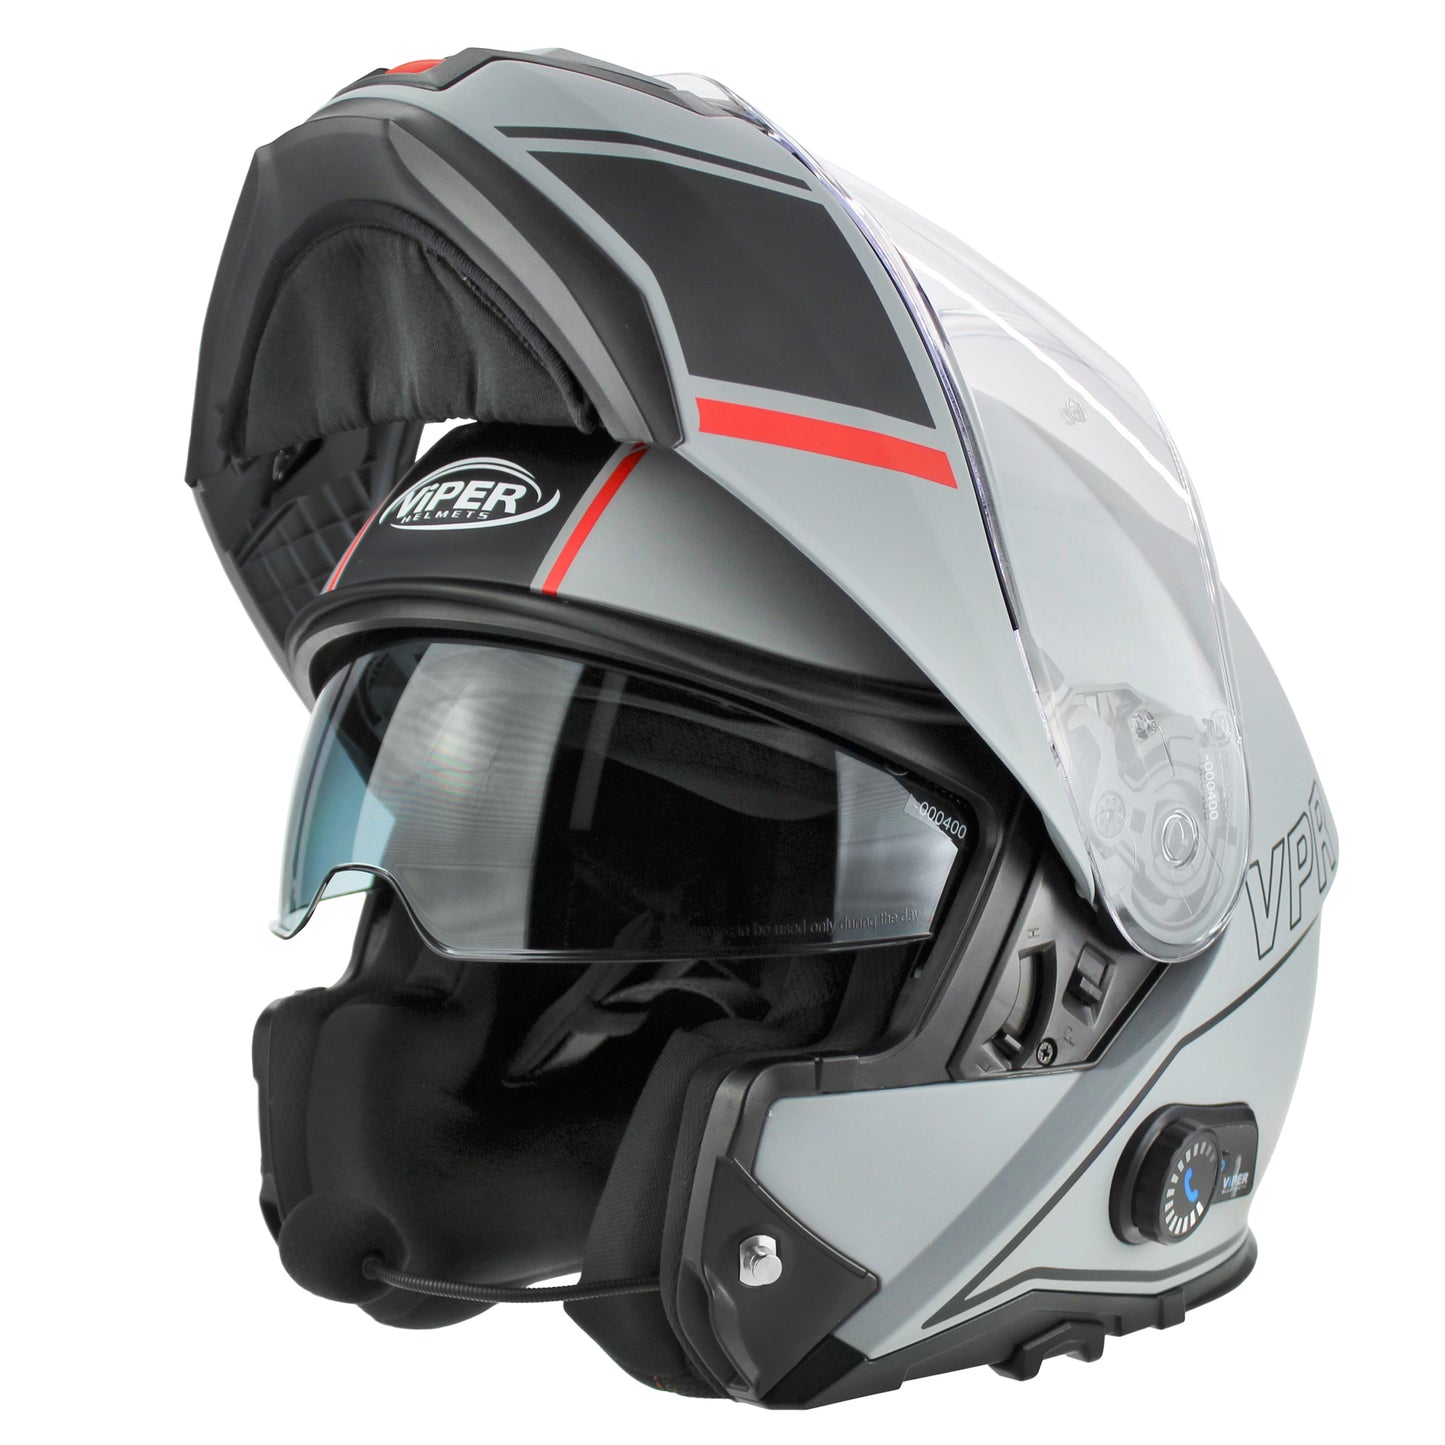 Riderwear | Viper Rsv191 Blinc 3.0 Flip Up Helmet - Vision Meteor Grey